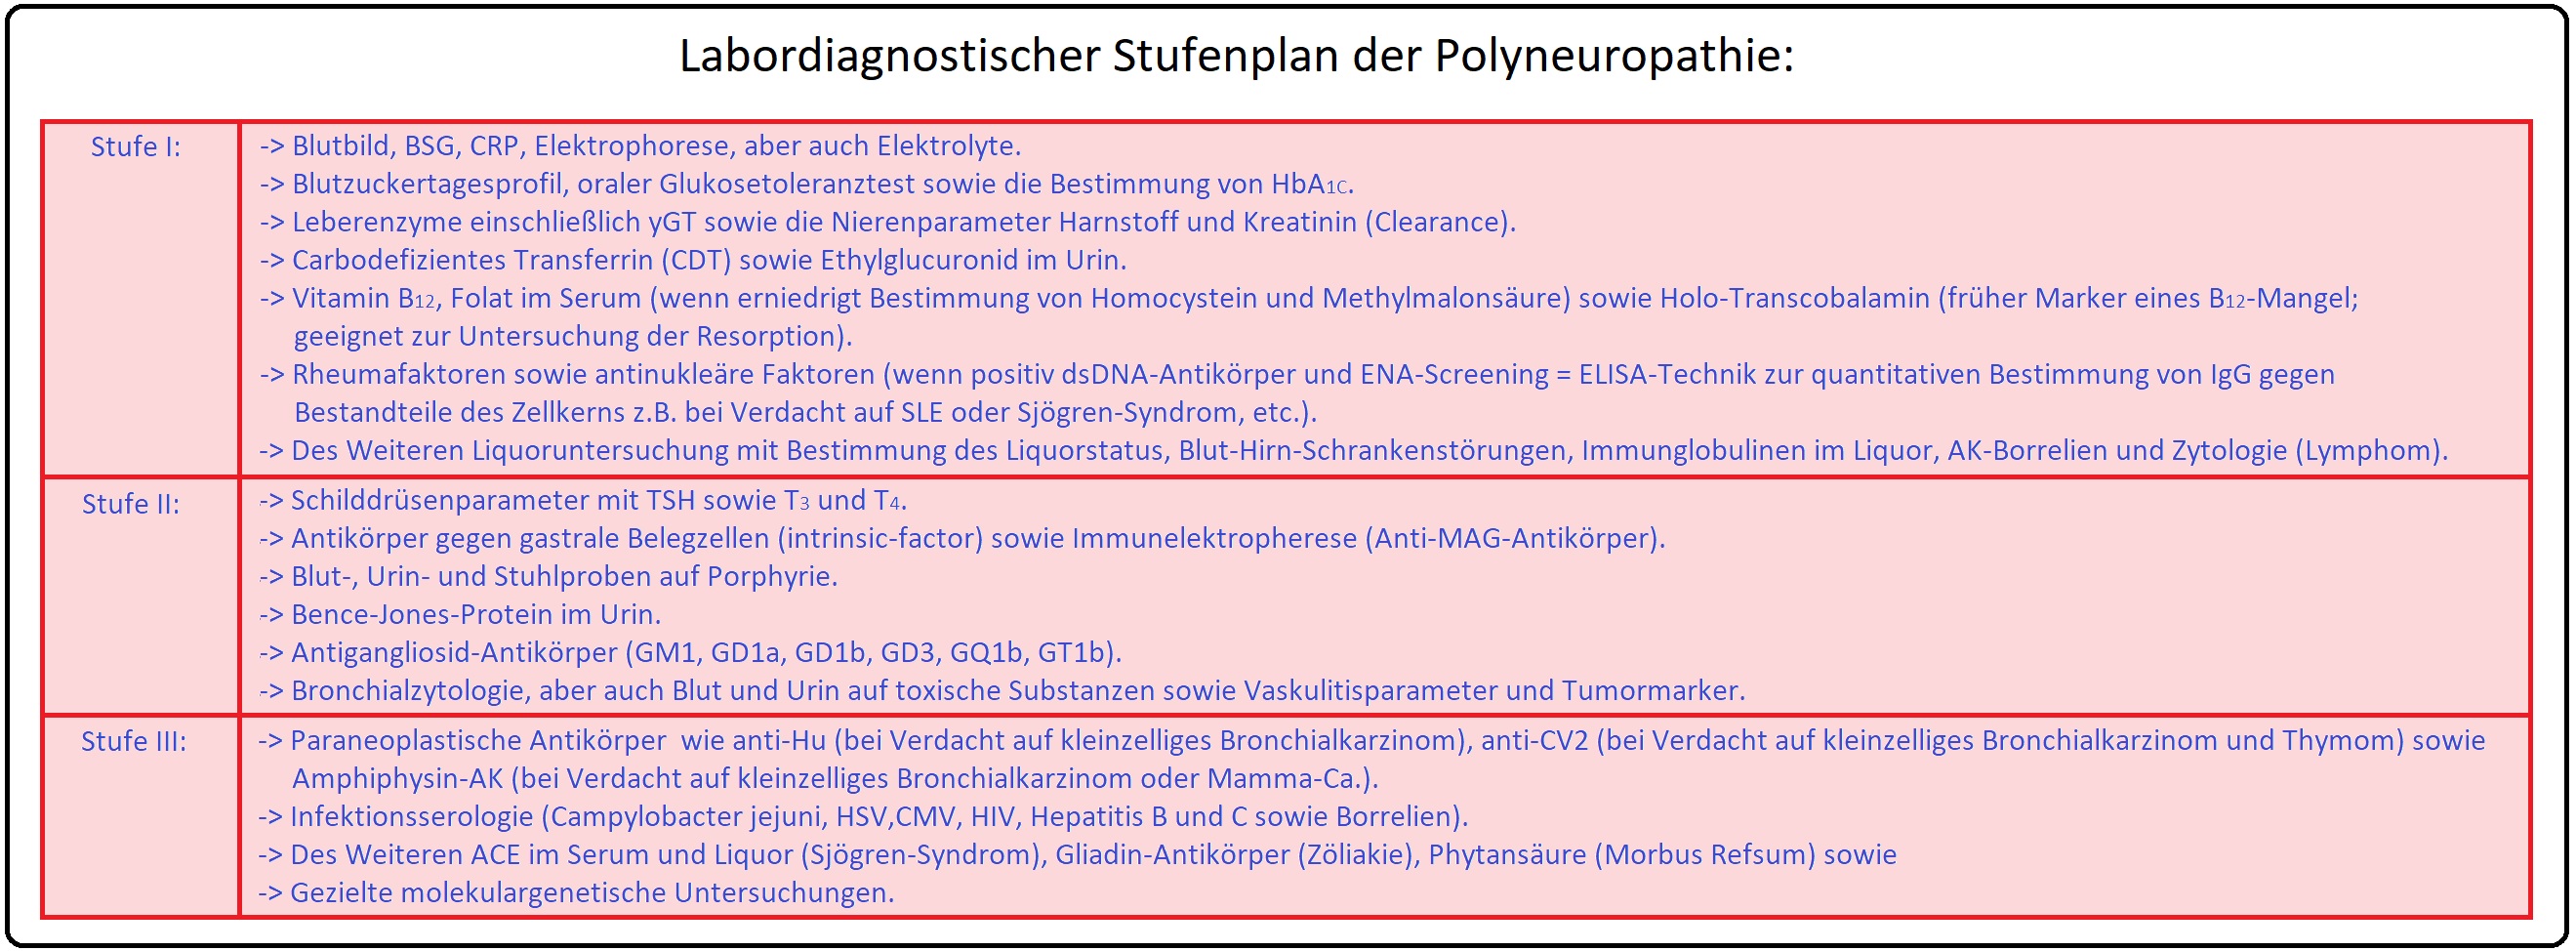 18 Labordiagnostischer Stufenplan der Polyneuropathie